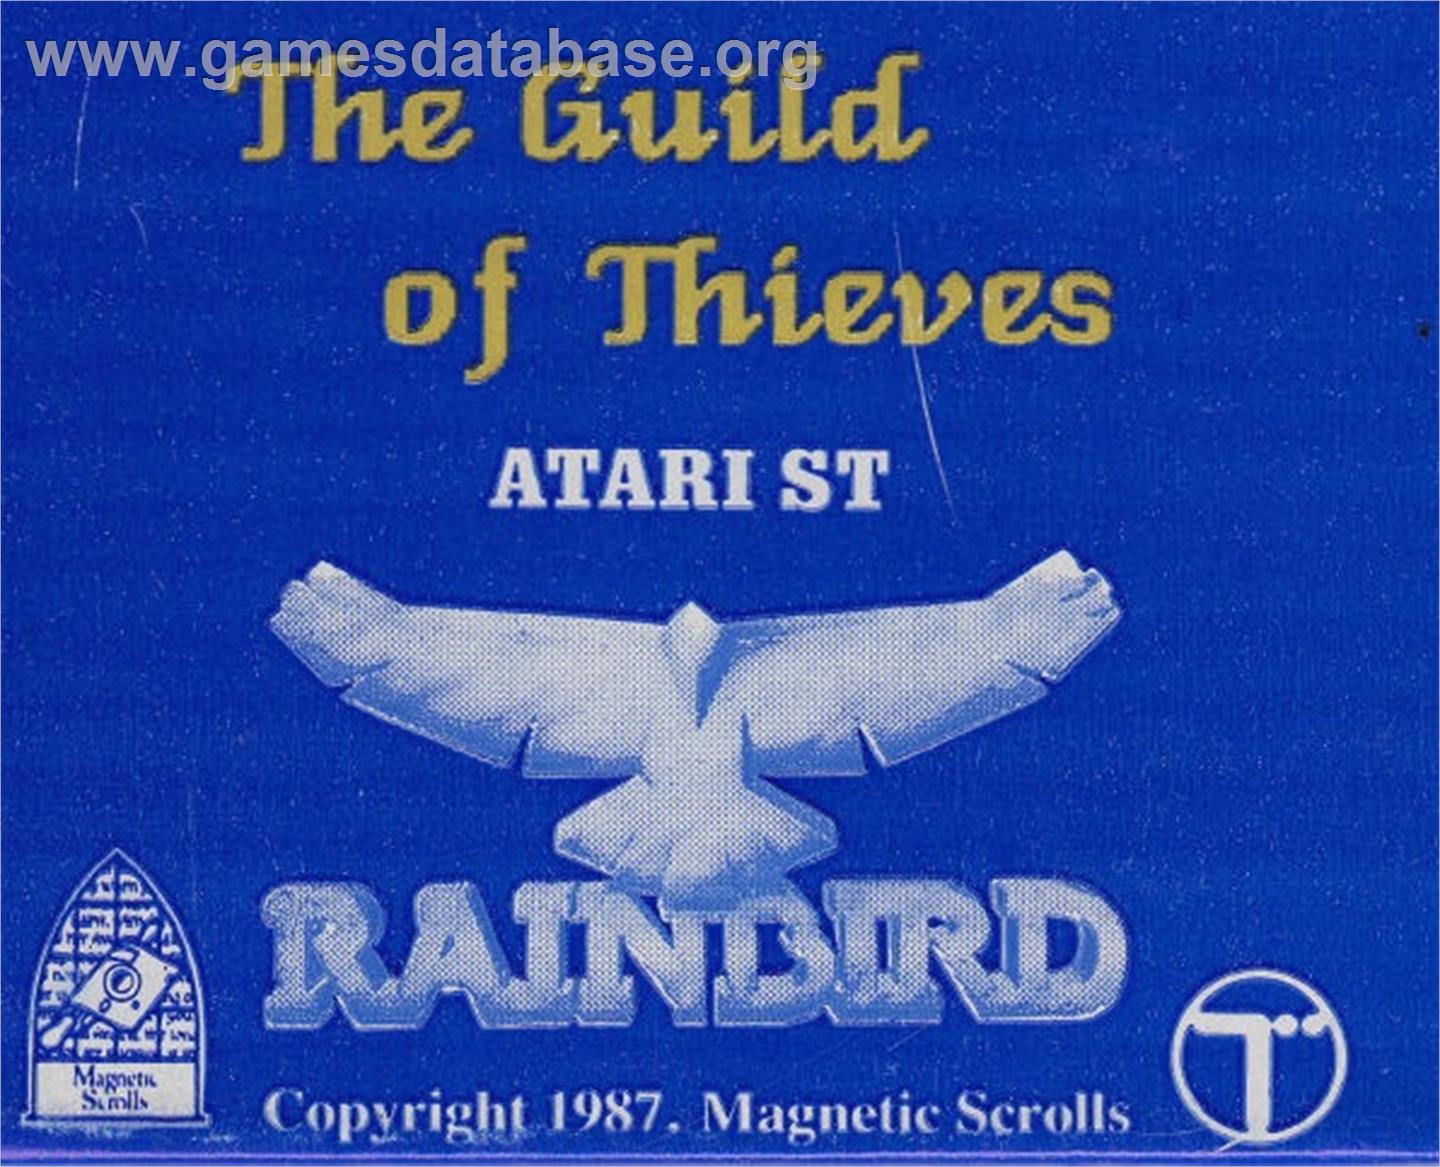 Guild of Thieves - Atari ST - Artwork - Cartridge Top